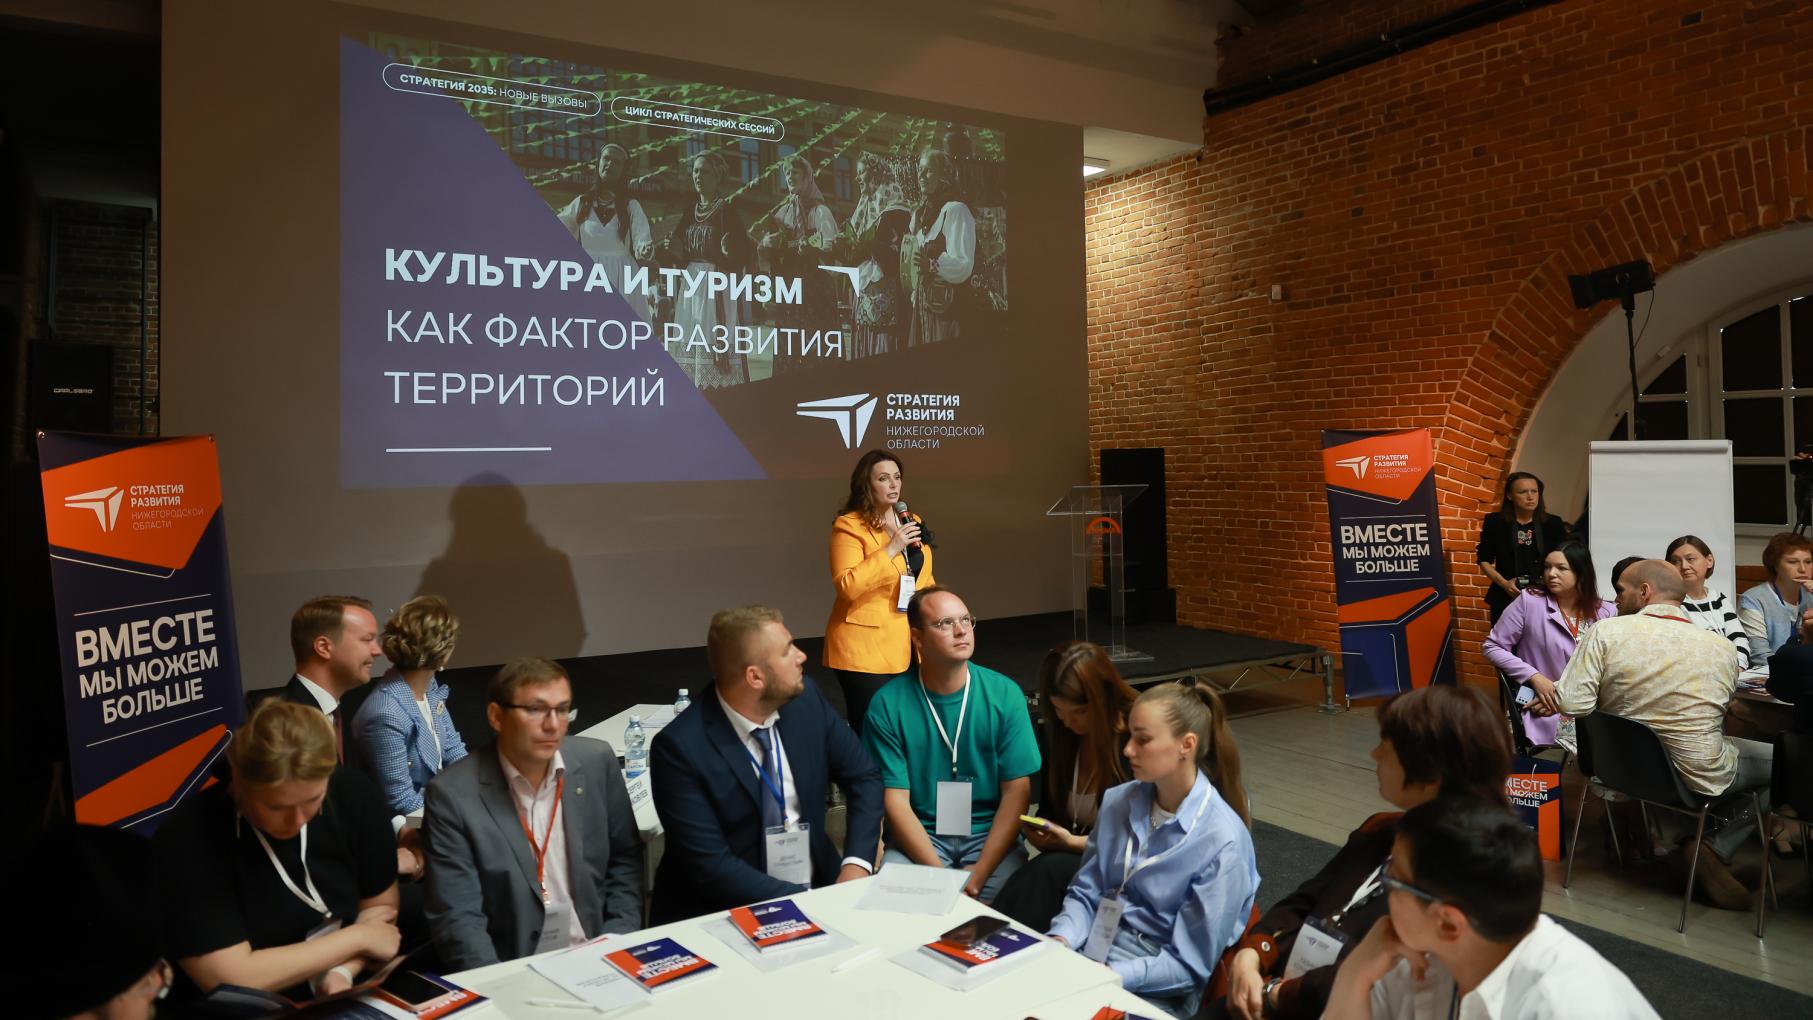 Культурное будущее туристического региона: новые идеи в Стратегию развития нижегородской области